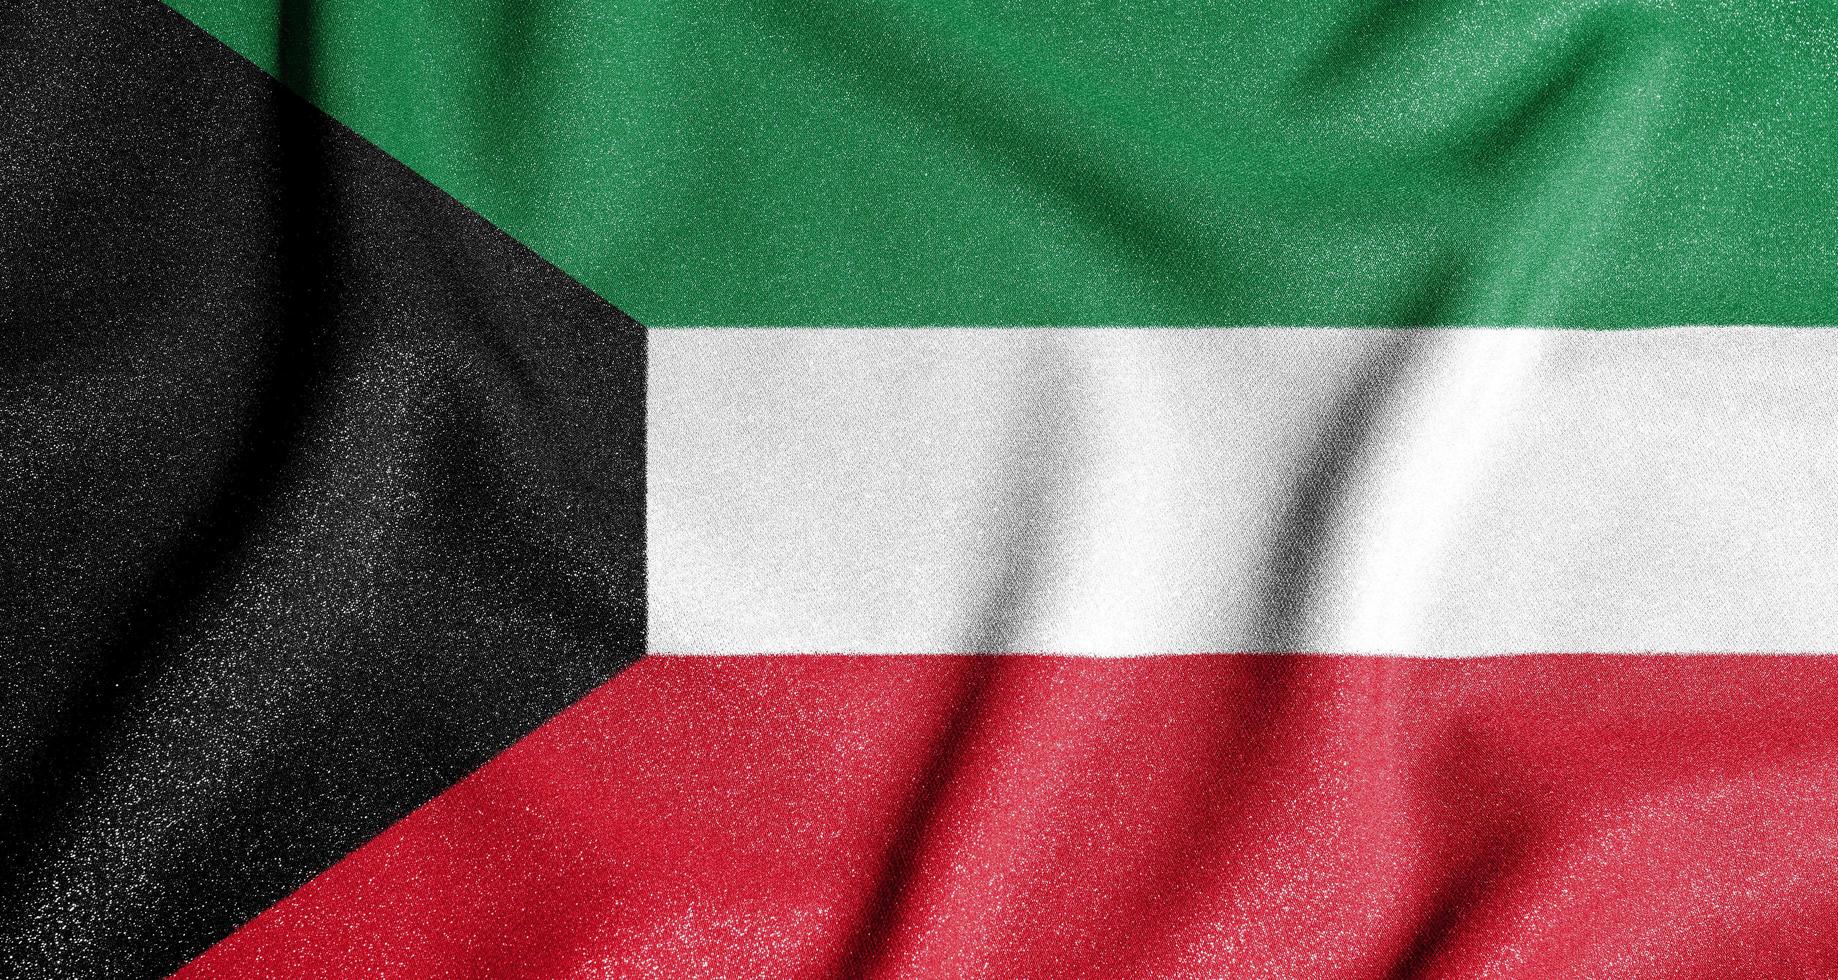 bandera nacional de kuwait. el principal símbolo de un país independiente. bandera de kuwait. foto